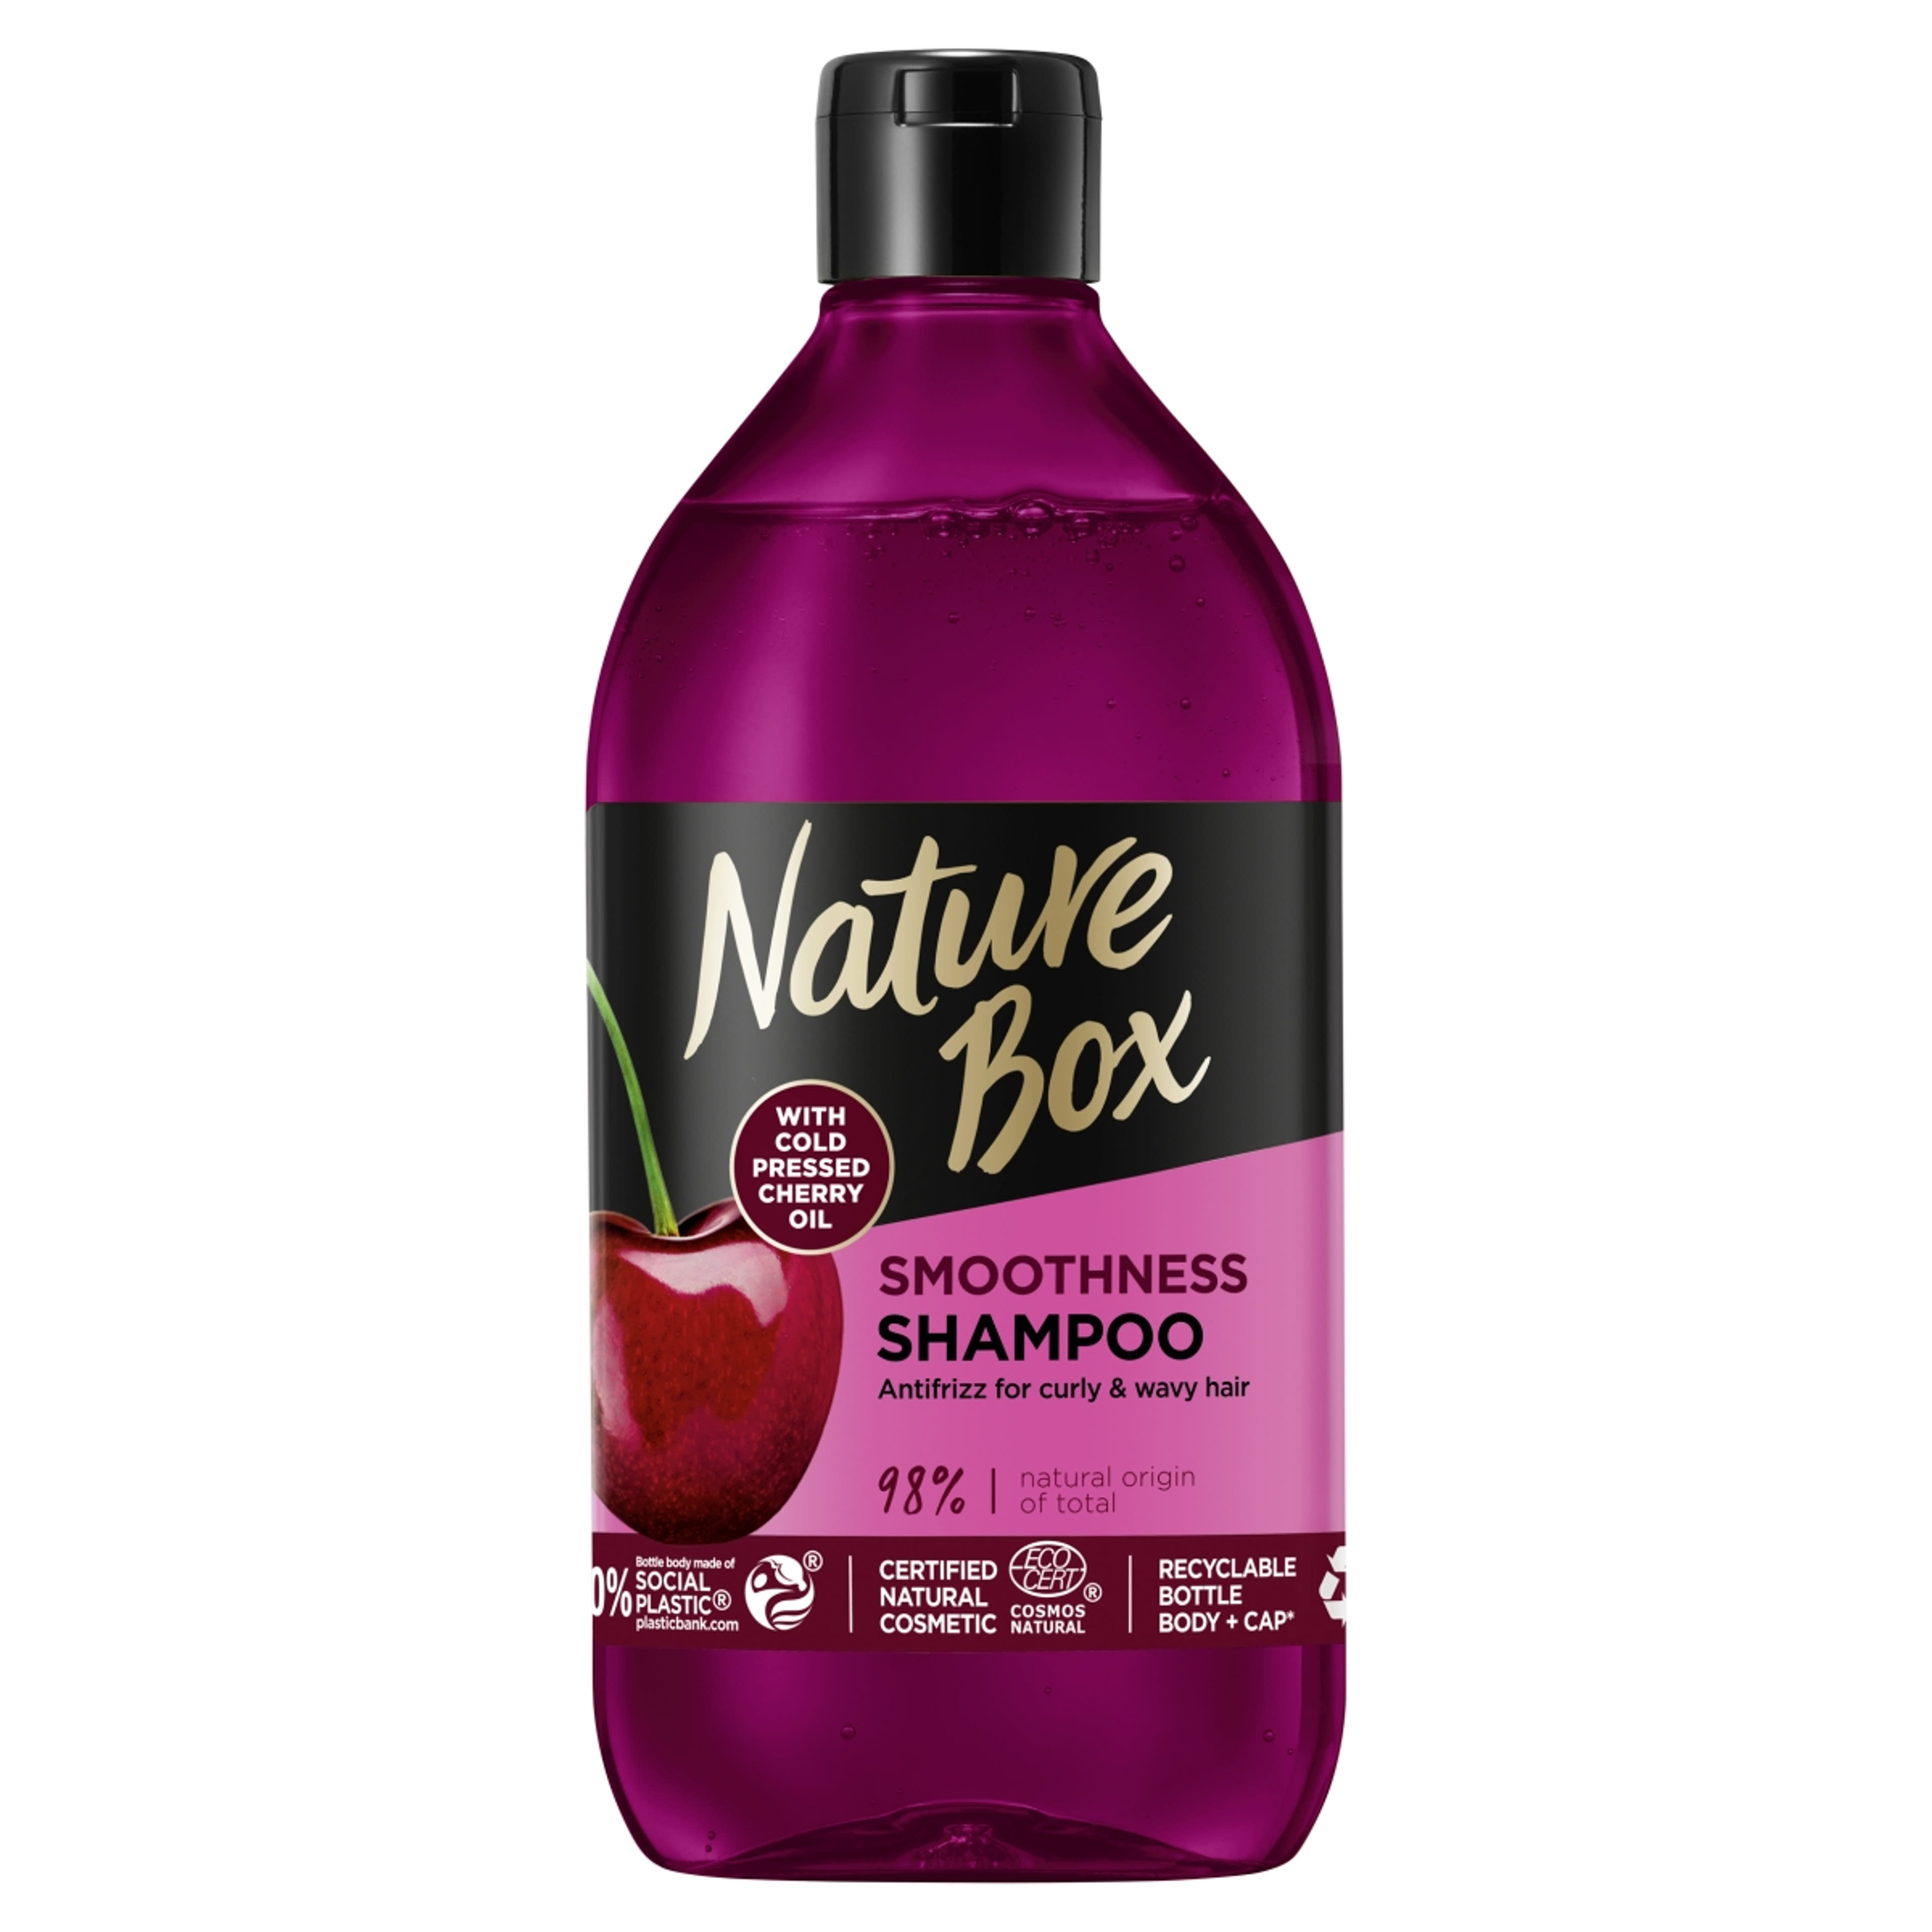 Nature Box sampon a puha hajért hidegen préselt cseresznye olajjal - 385 ml